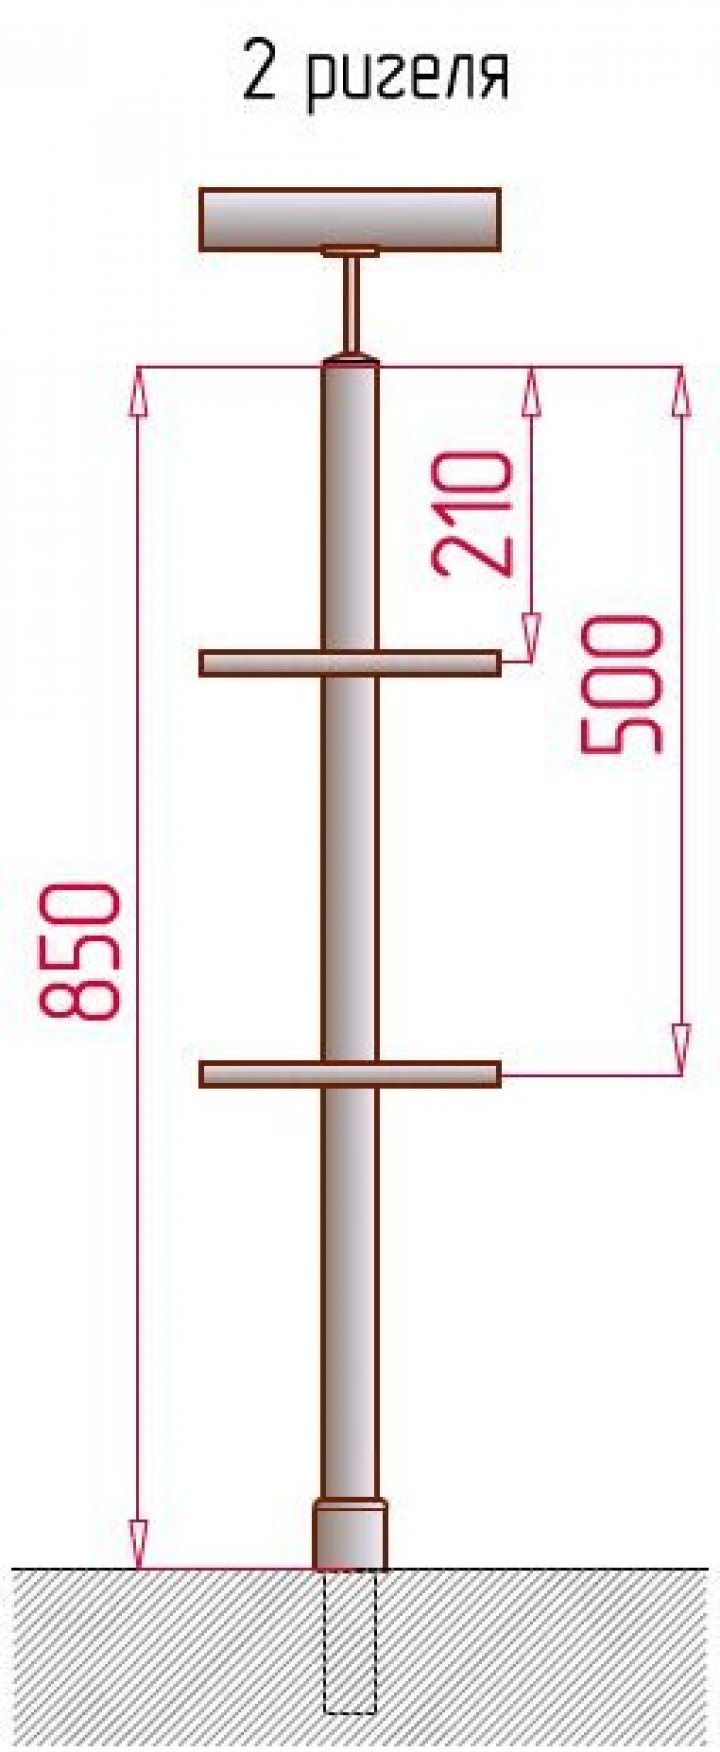 Опорная стойка высотой 850 мм с двумя отверстиями М6 под держатели ригелей